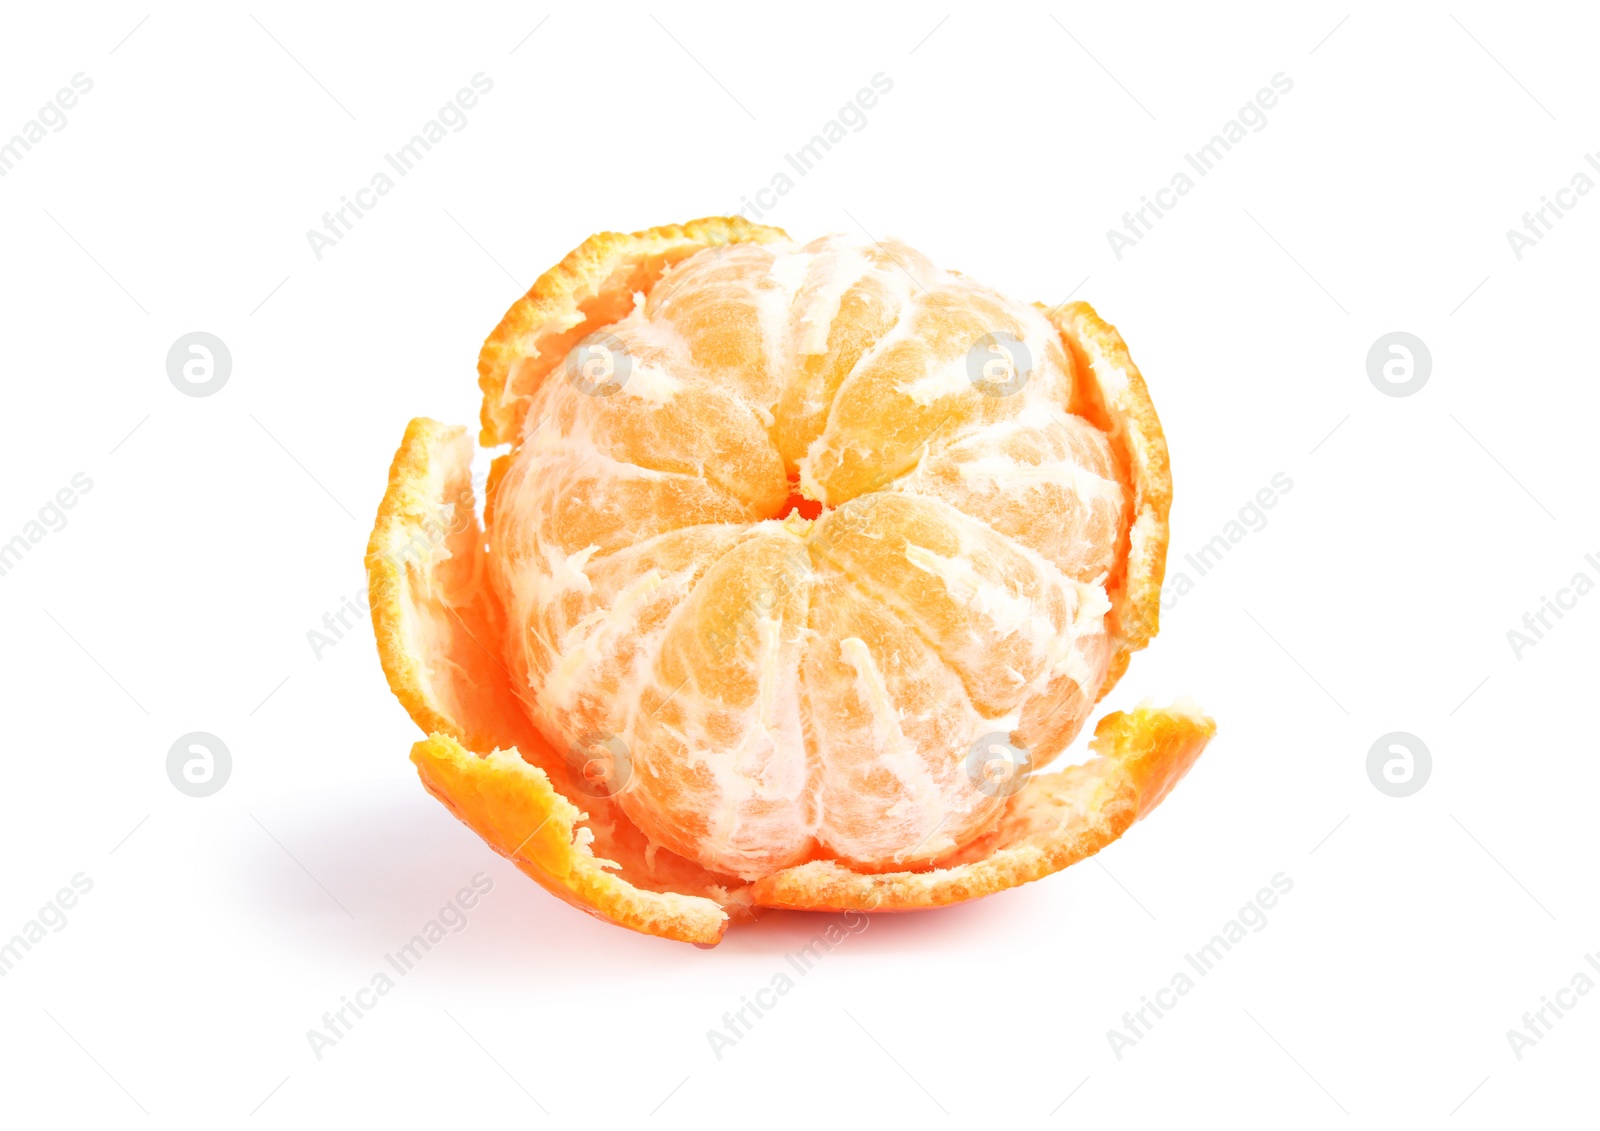 Photo of Peeled ripe tangerine on white background. Citrus fruit